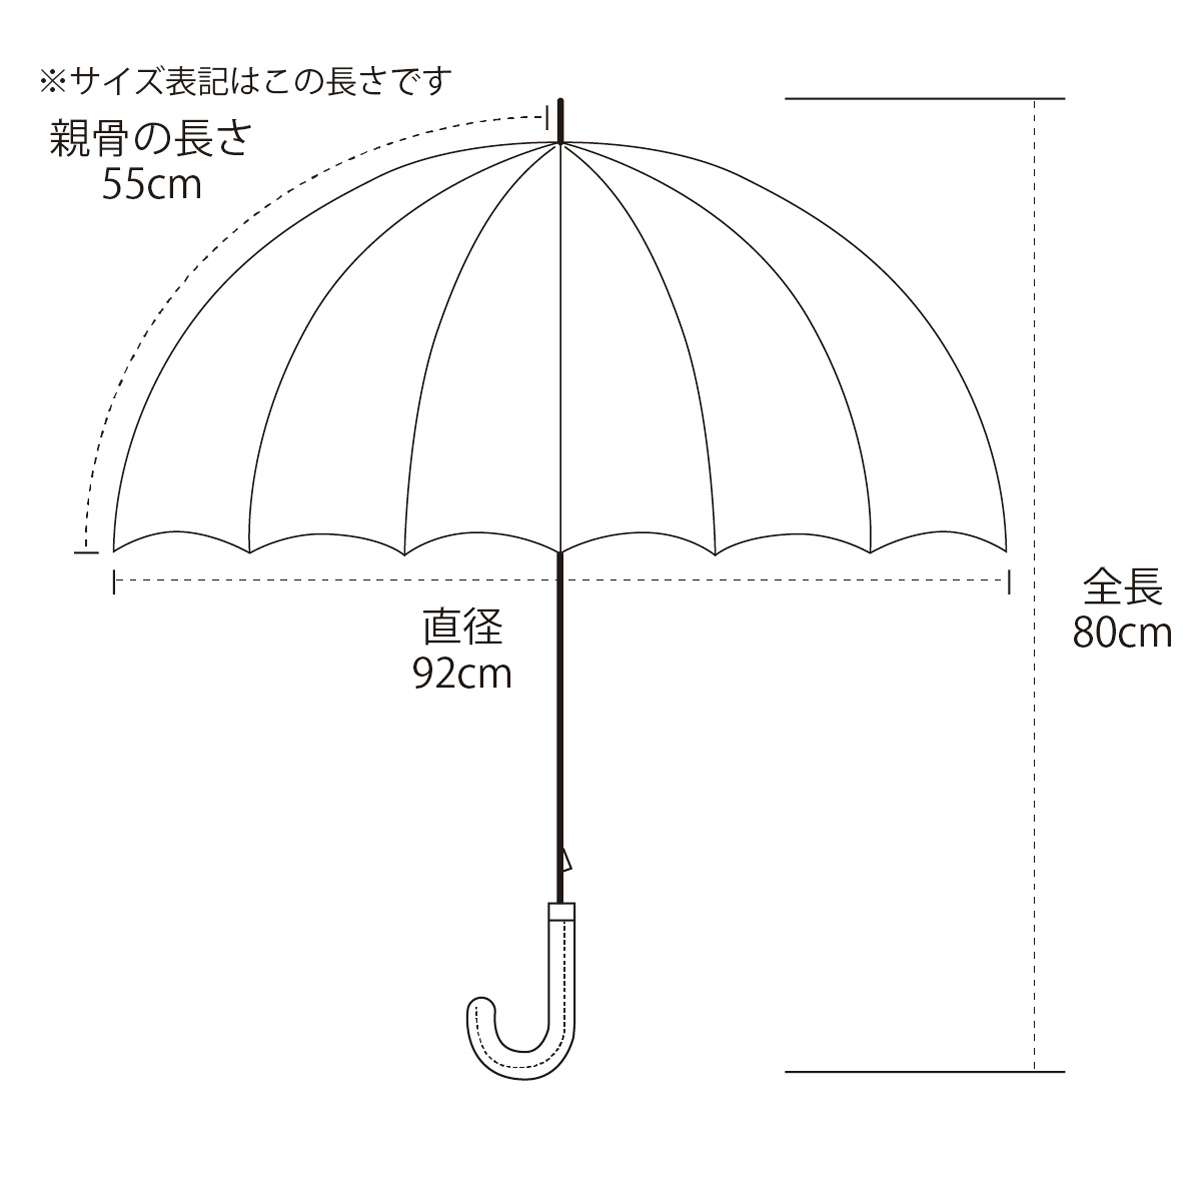 ピッコーネ アッチェッソーリ レディース 雨傘 雨用長傘 55cm ポリエステル100% 連続司祭柄